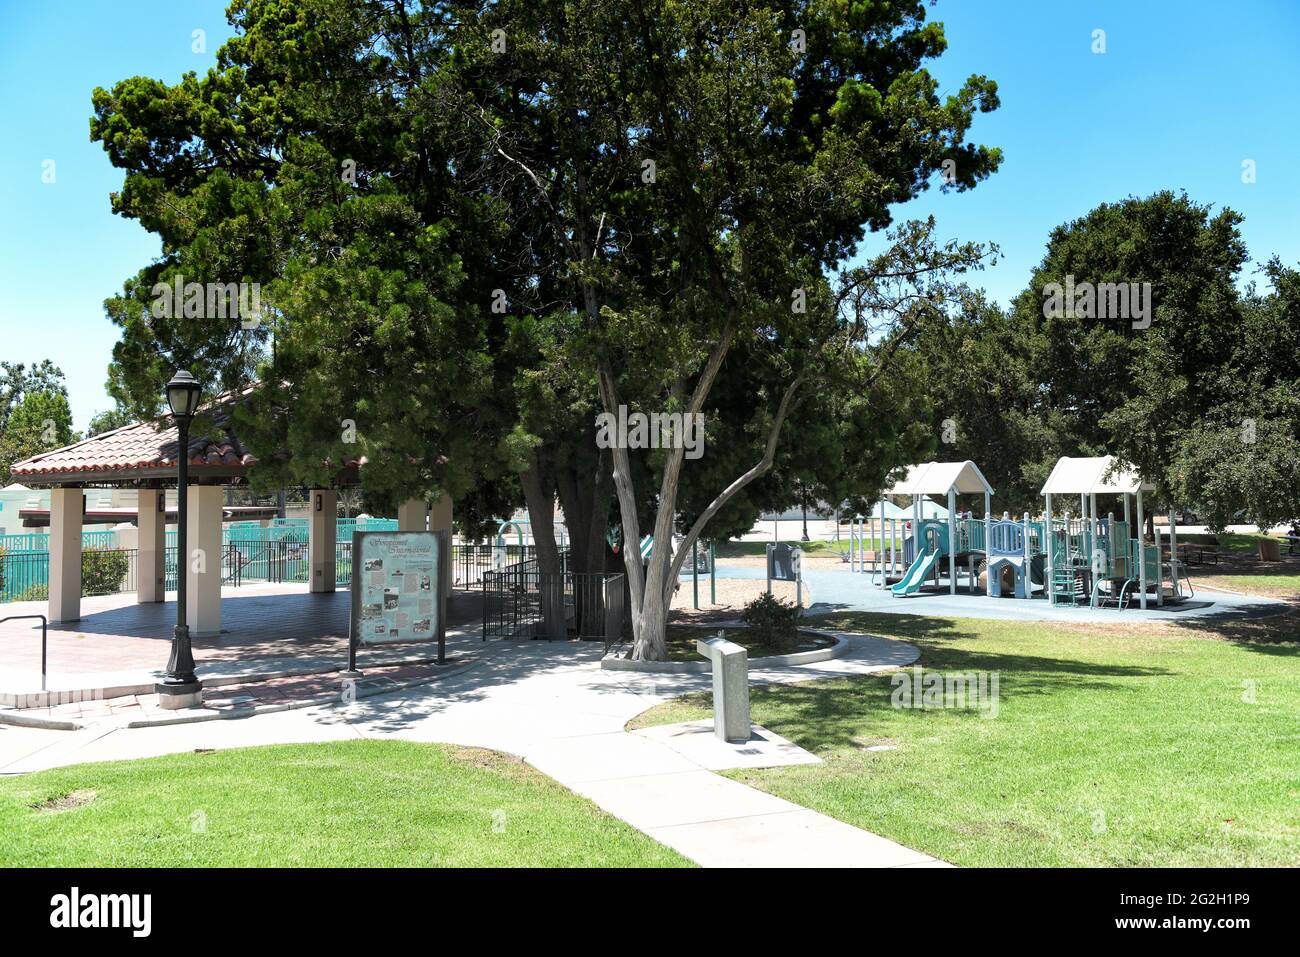 BREA, KALIFORNIEN - 9. JUN 2021: Der Ralph Barns Bandstand im City Hall Park, mit dem Plunge und dem Spielplatz im Hintergrund. Stockfoto